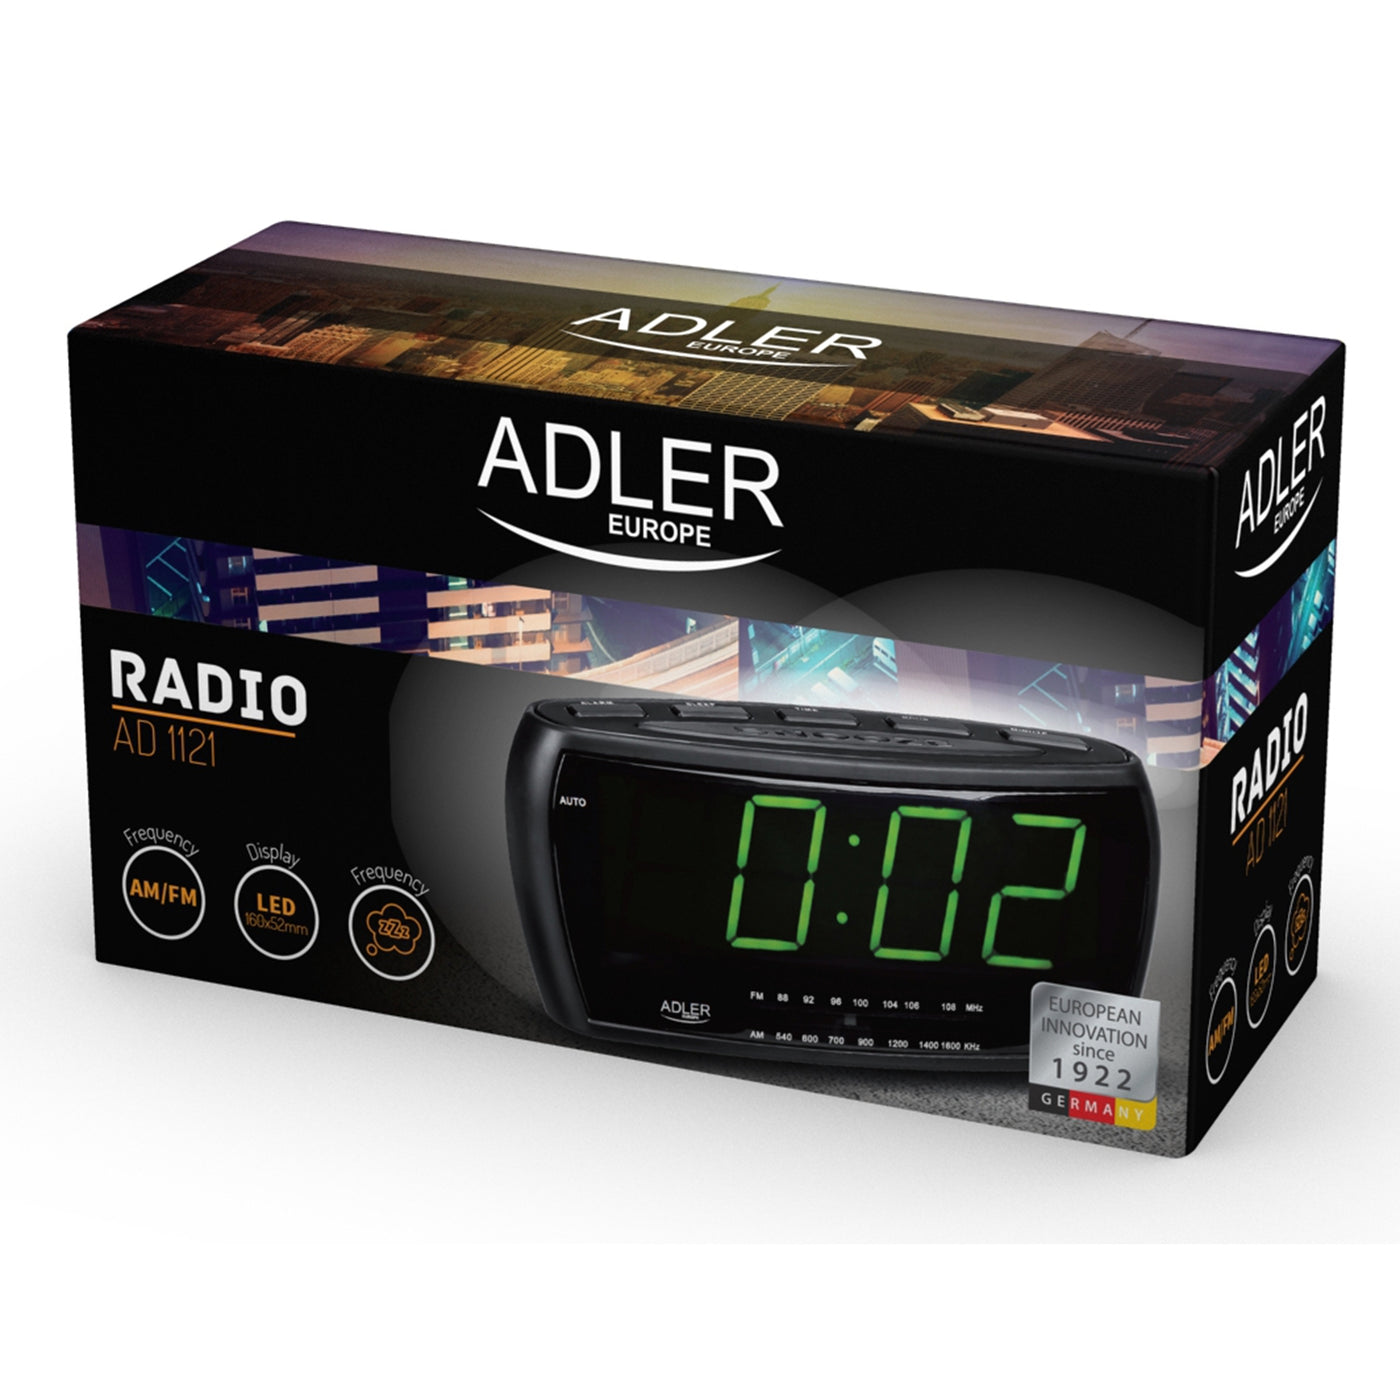 Radiobudzik radio fm/am zegar led adler ad1121 jakość